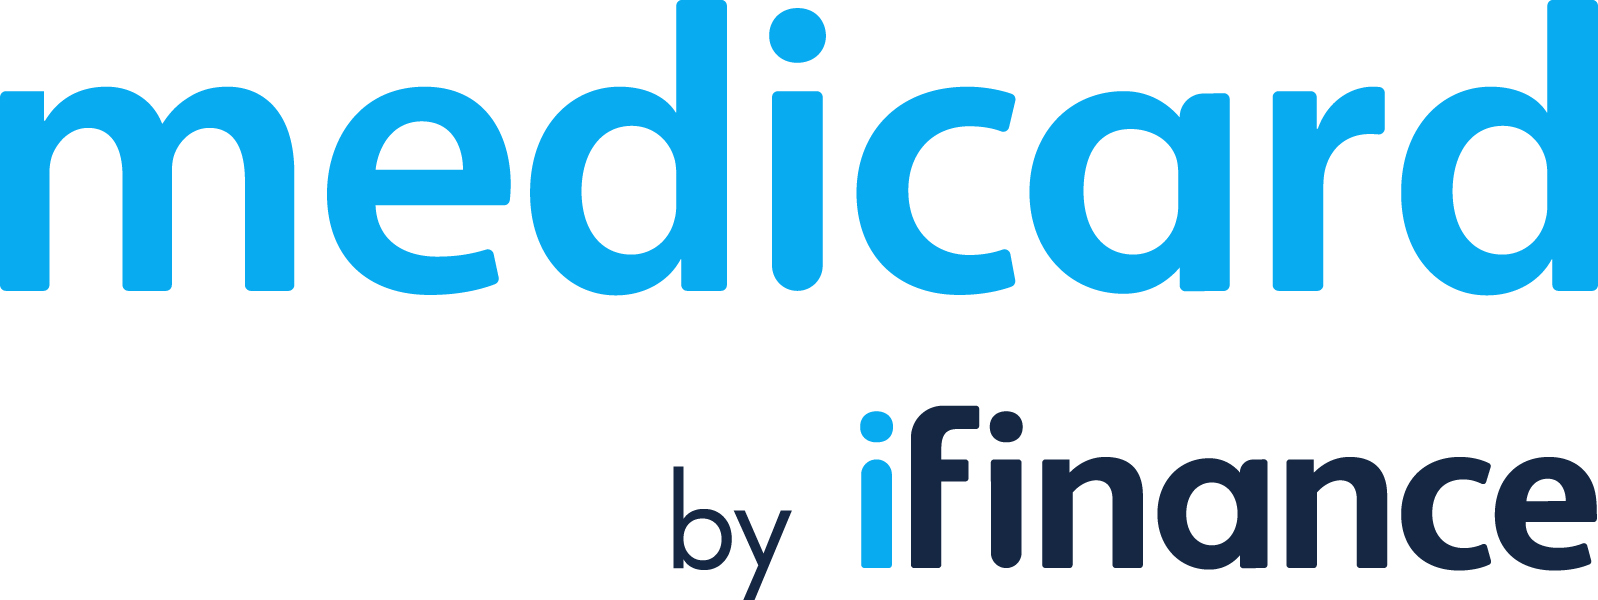 Medicard logo